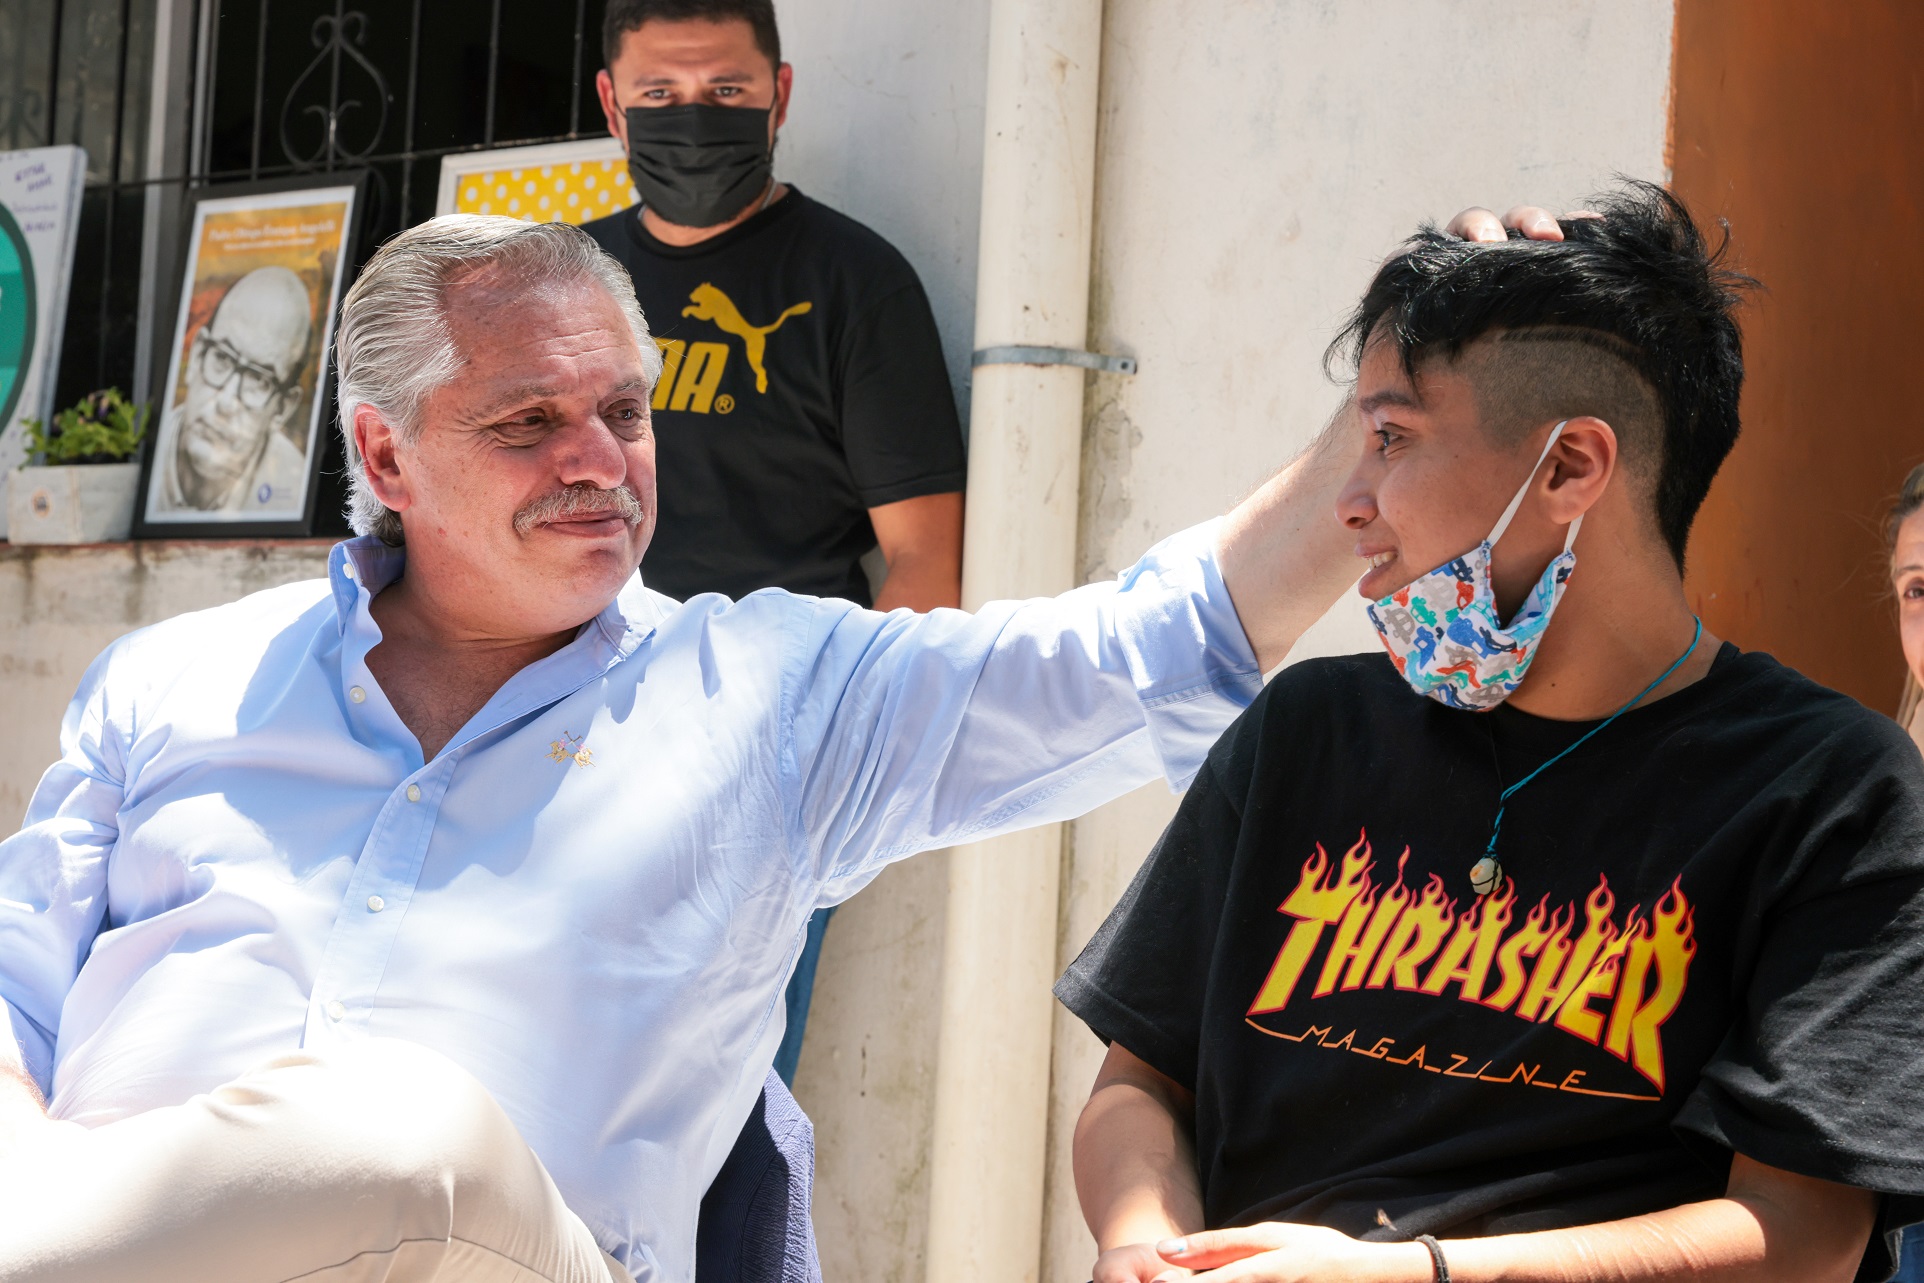 El presidente Alberto Fernández visitó un espacio que asiste a personas en situación de vulnerabilidad